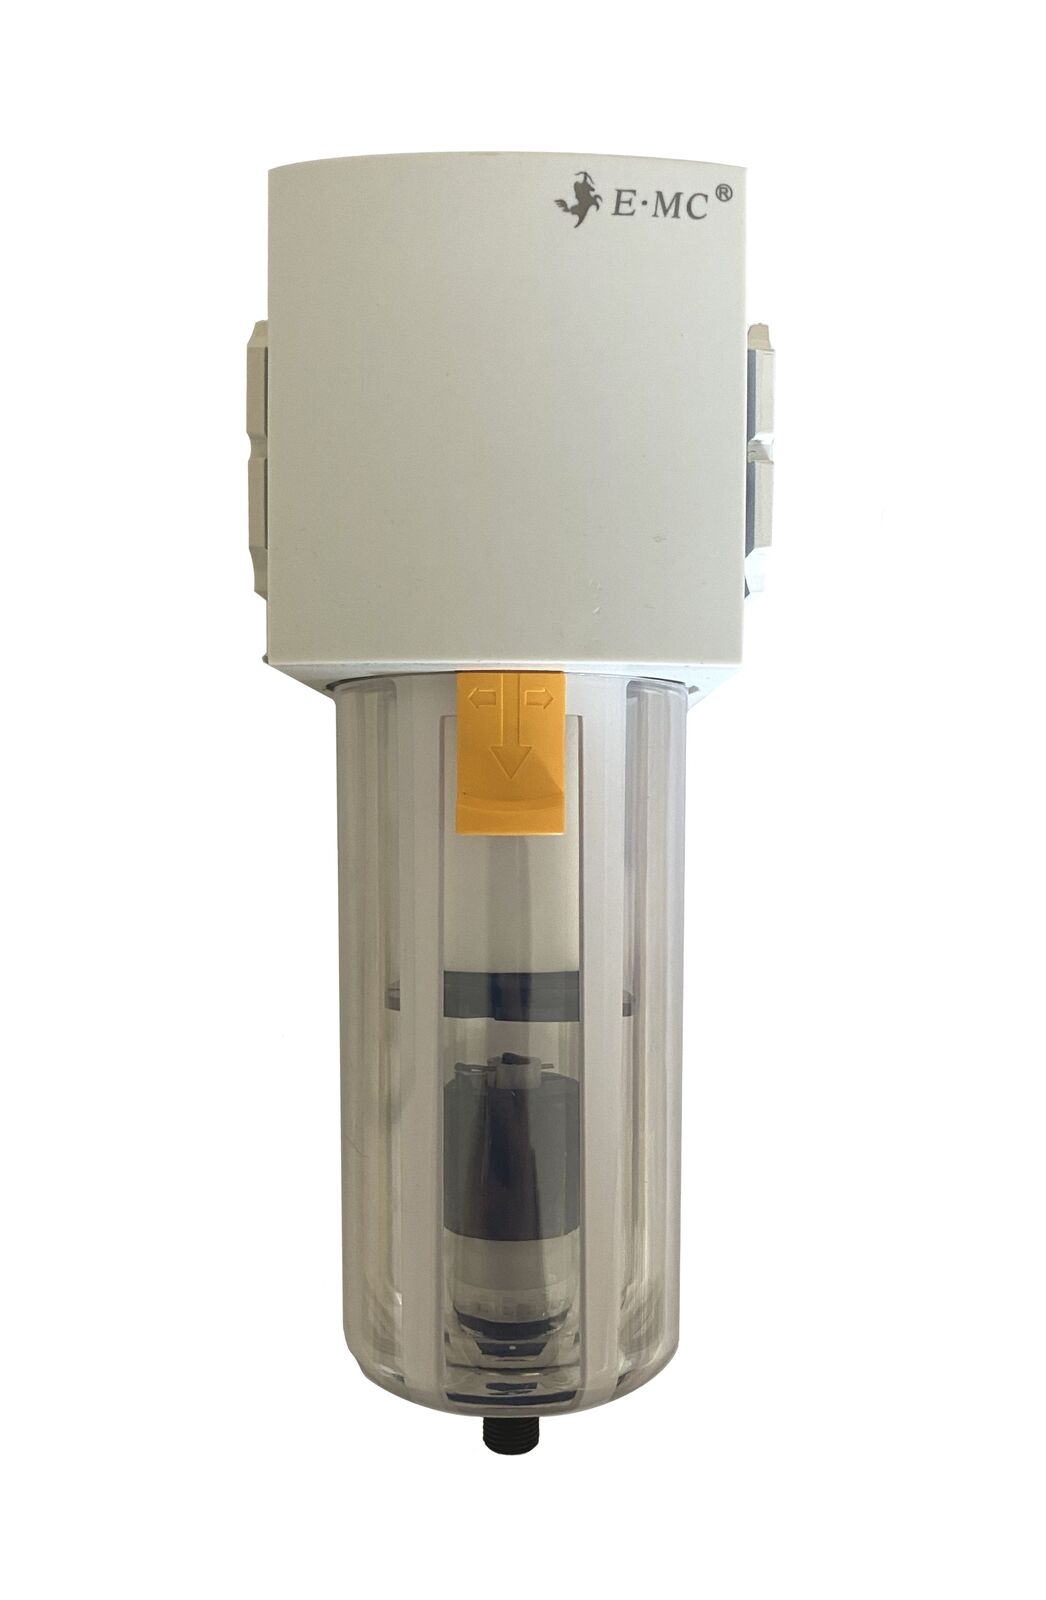 Druckluft Filter Wasserabscheider mit automatischer Entwässerung